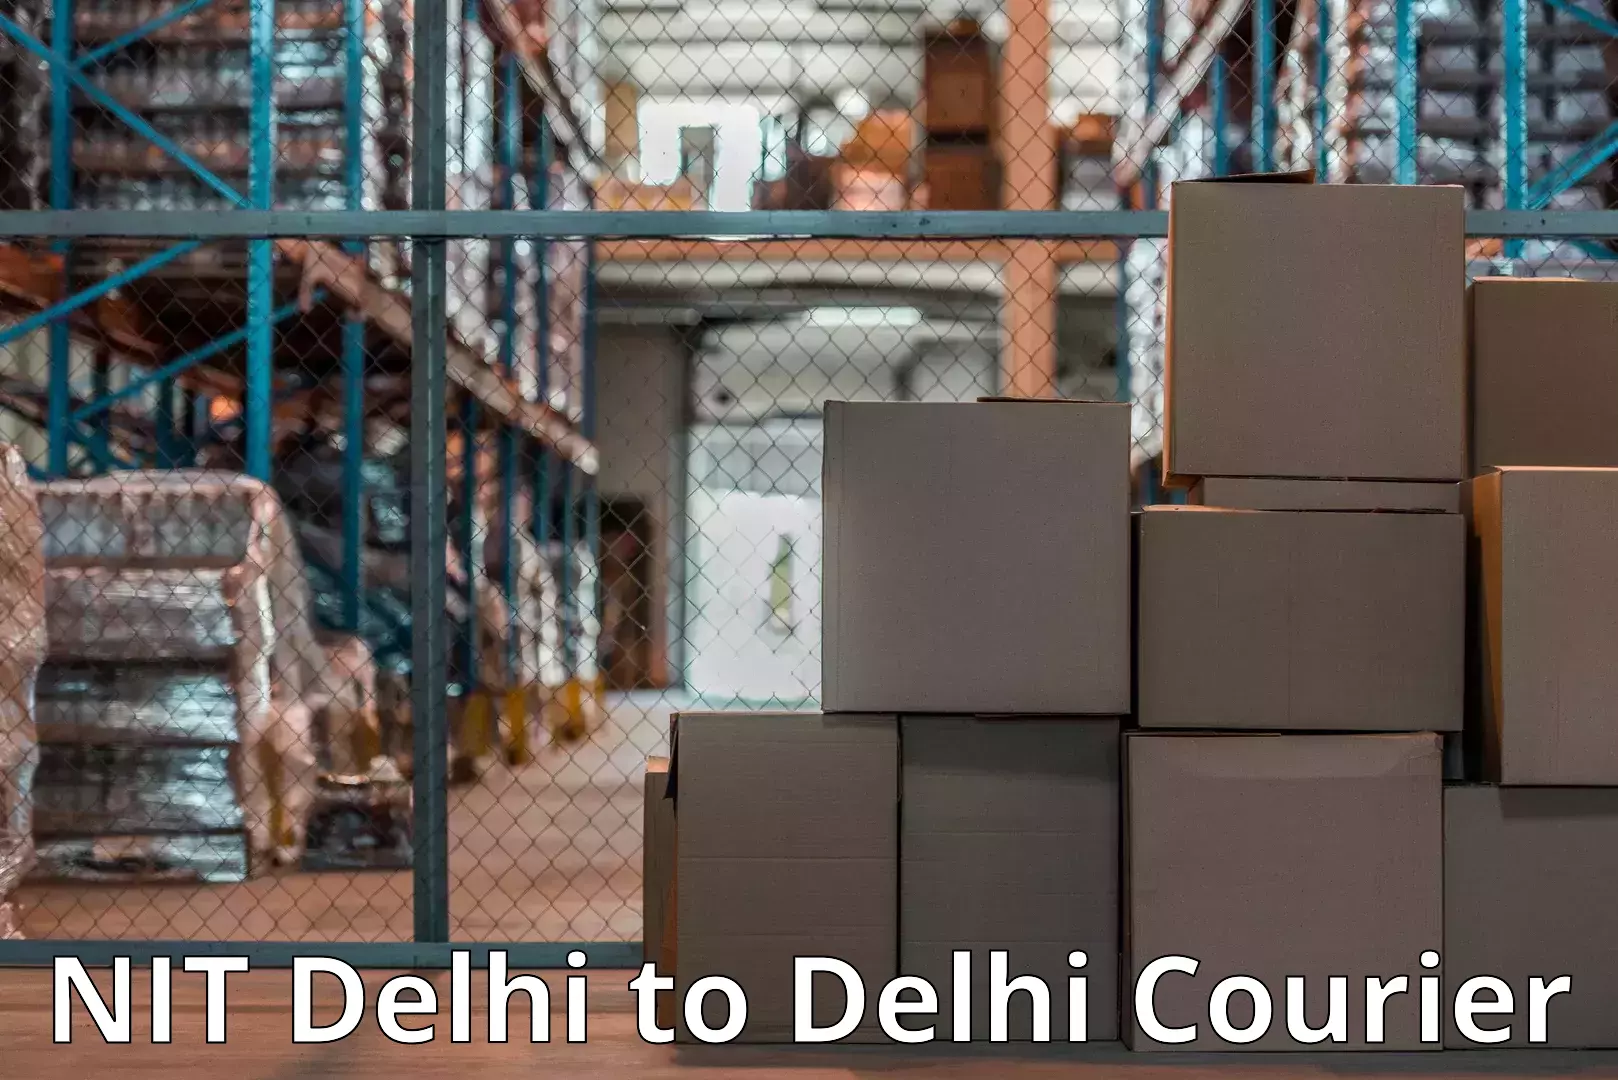 Professional moving assistance NIT Delhi to East Delhi